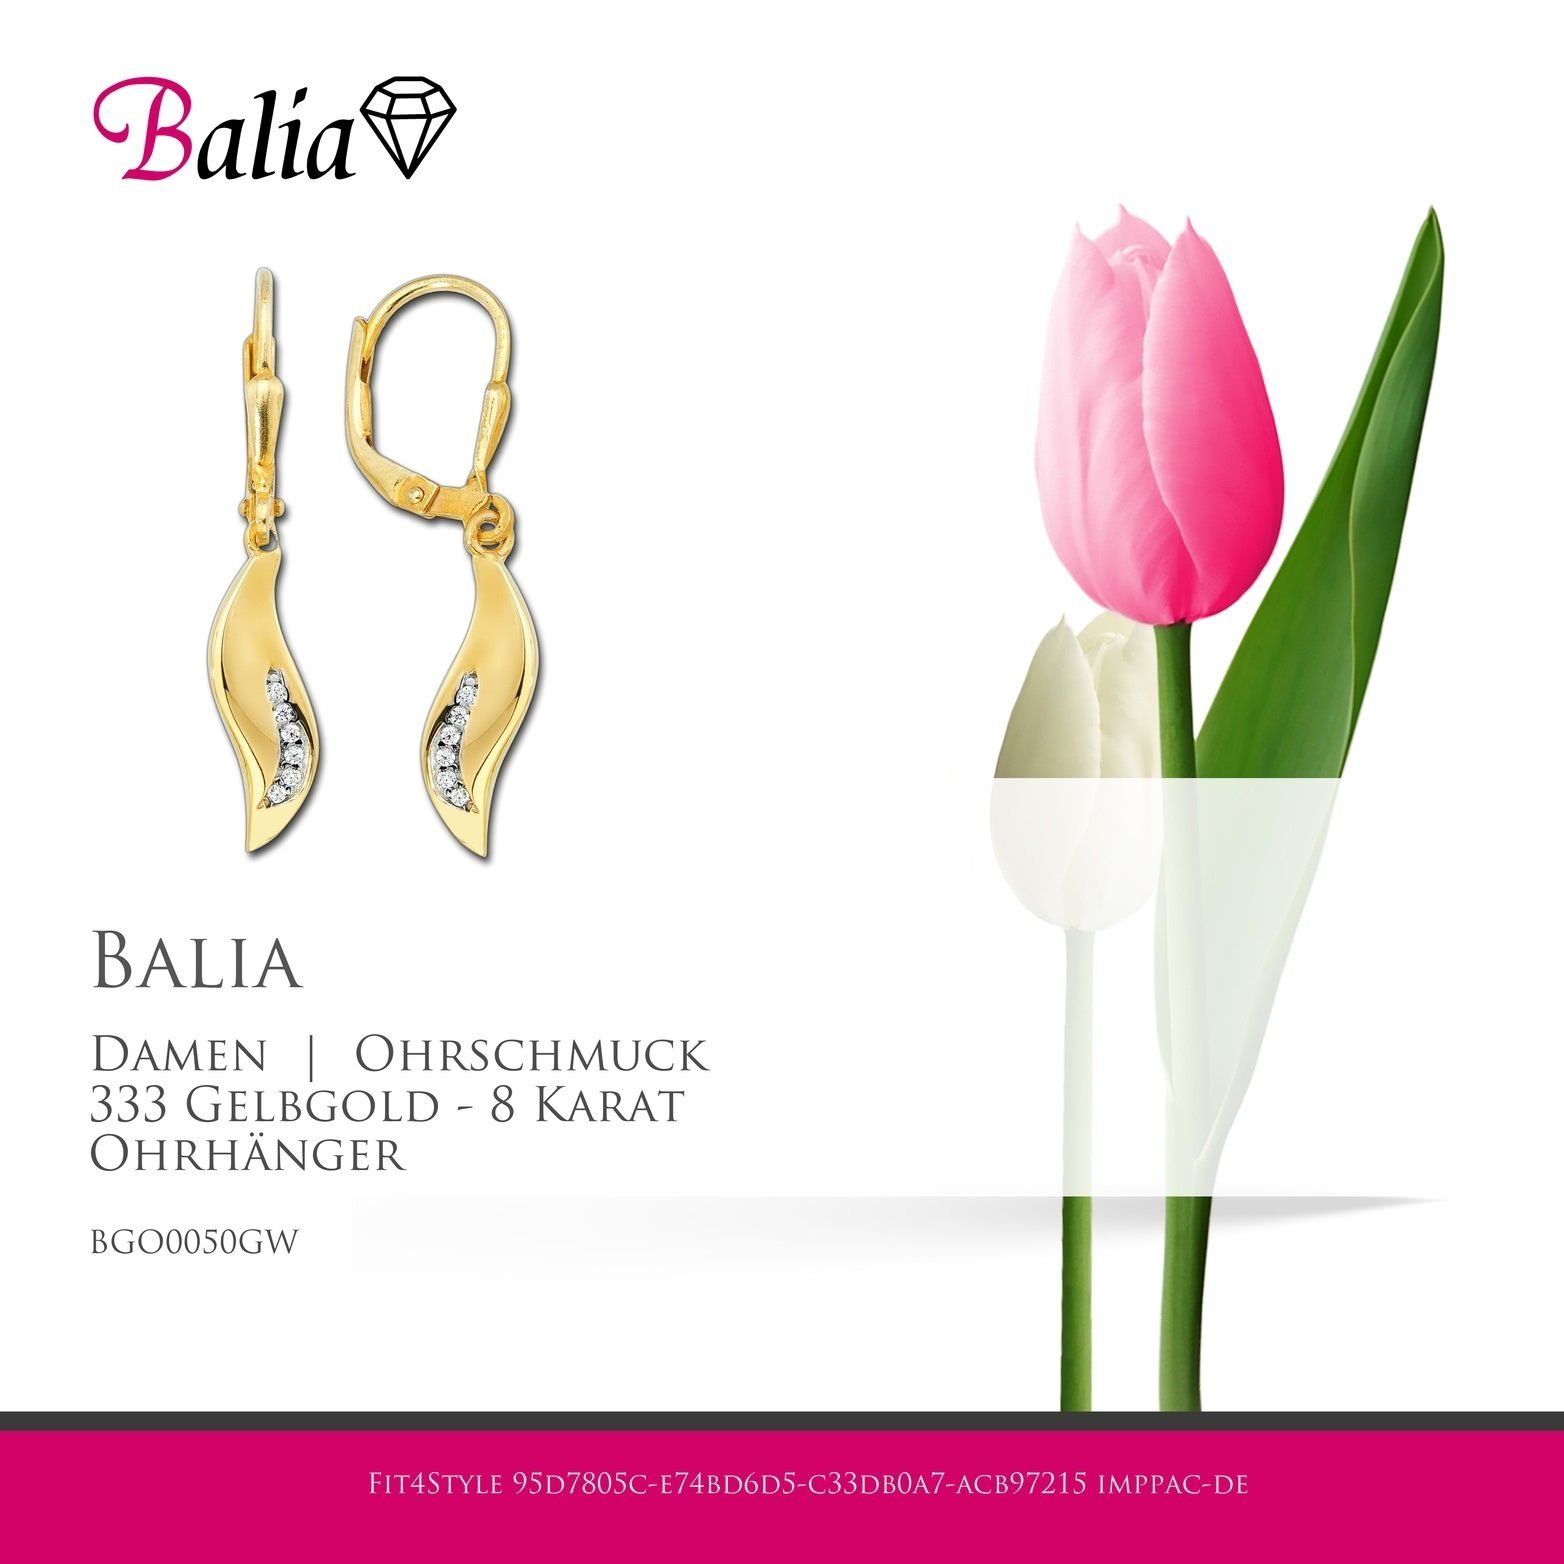 Gold - Karat, Balia 8 Paar Damen Welle Gelbgold Ohrhänger Balia 3,1cm (Ohrhänger), Damen 333 Welle Creolen ca. Länge Ohrhänger aus für